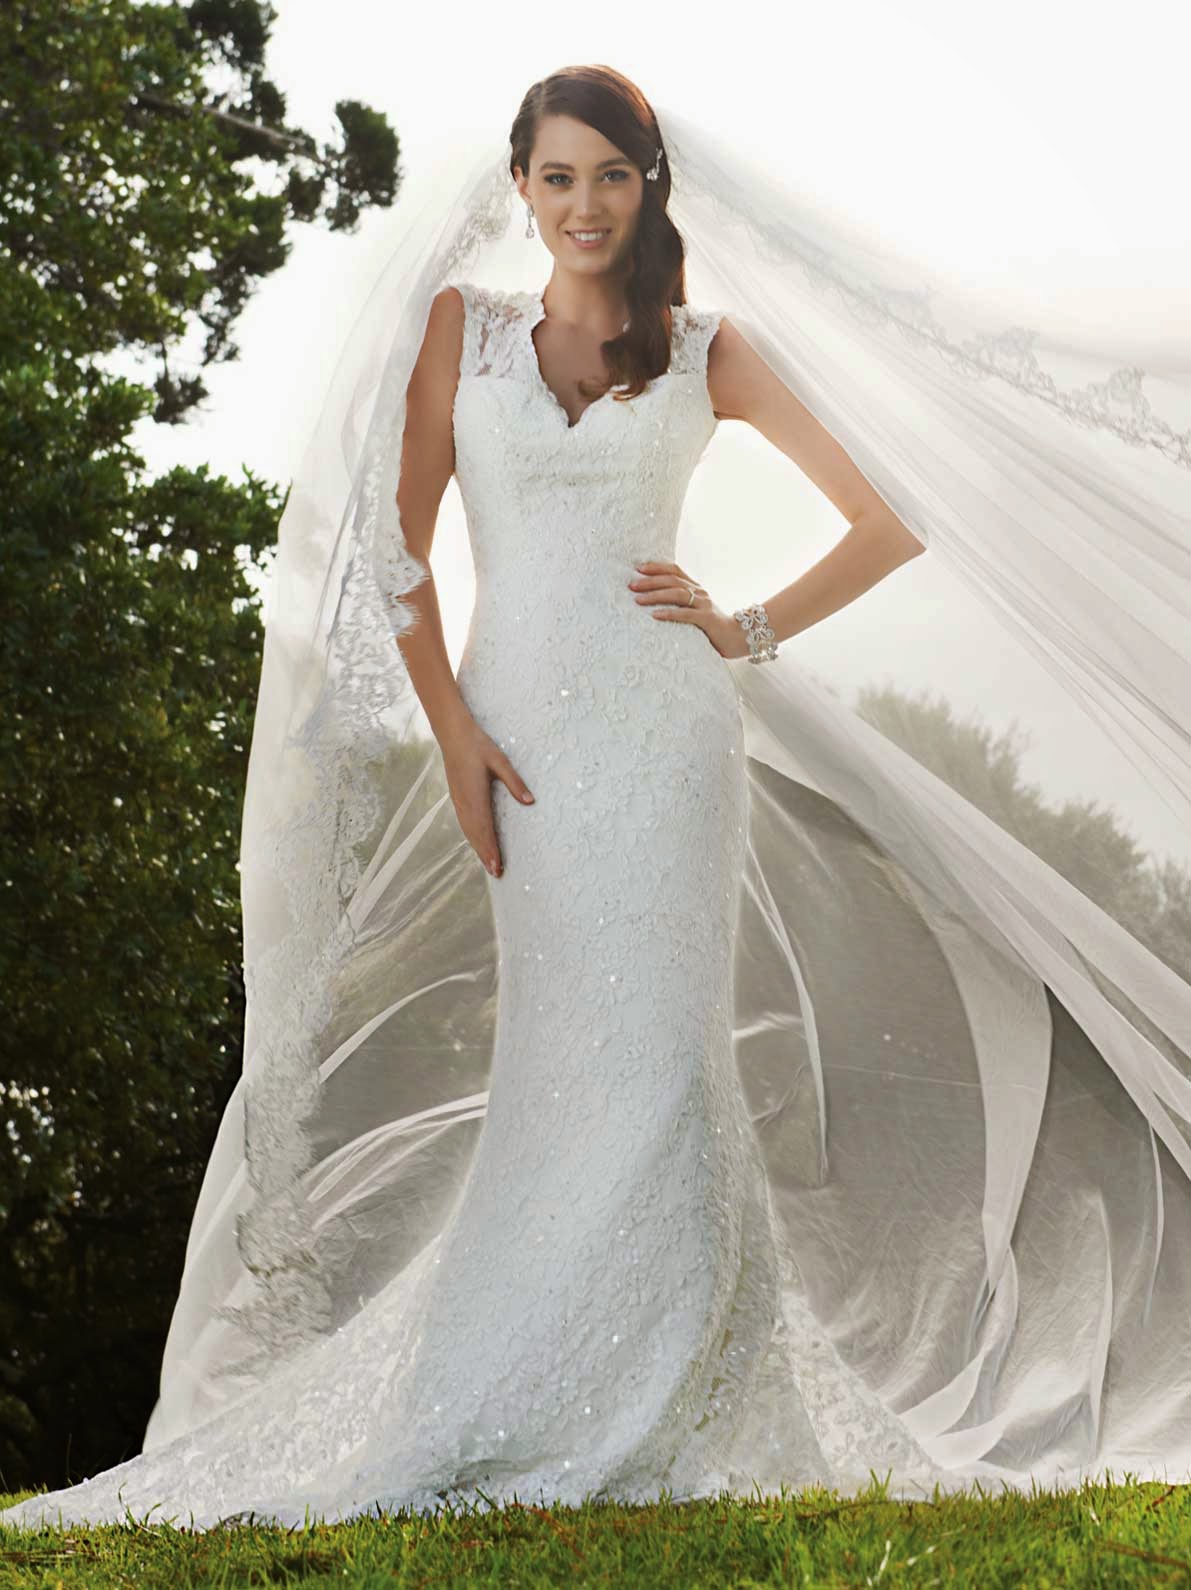  designer wedding gowns online categories wedding dress resolution 1191